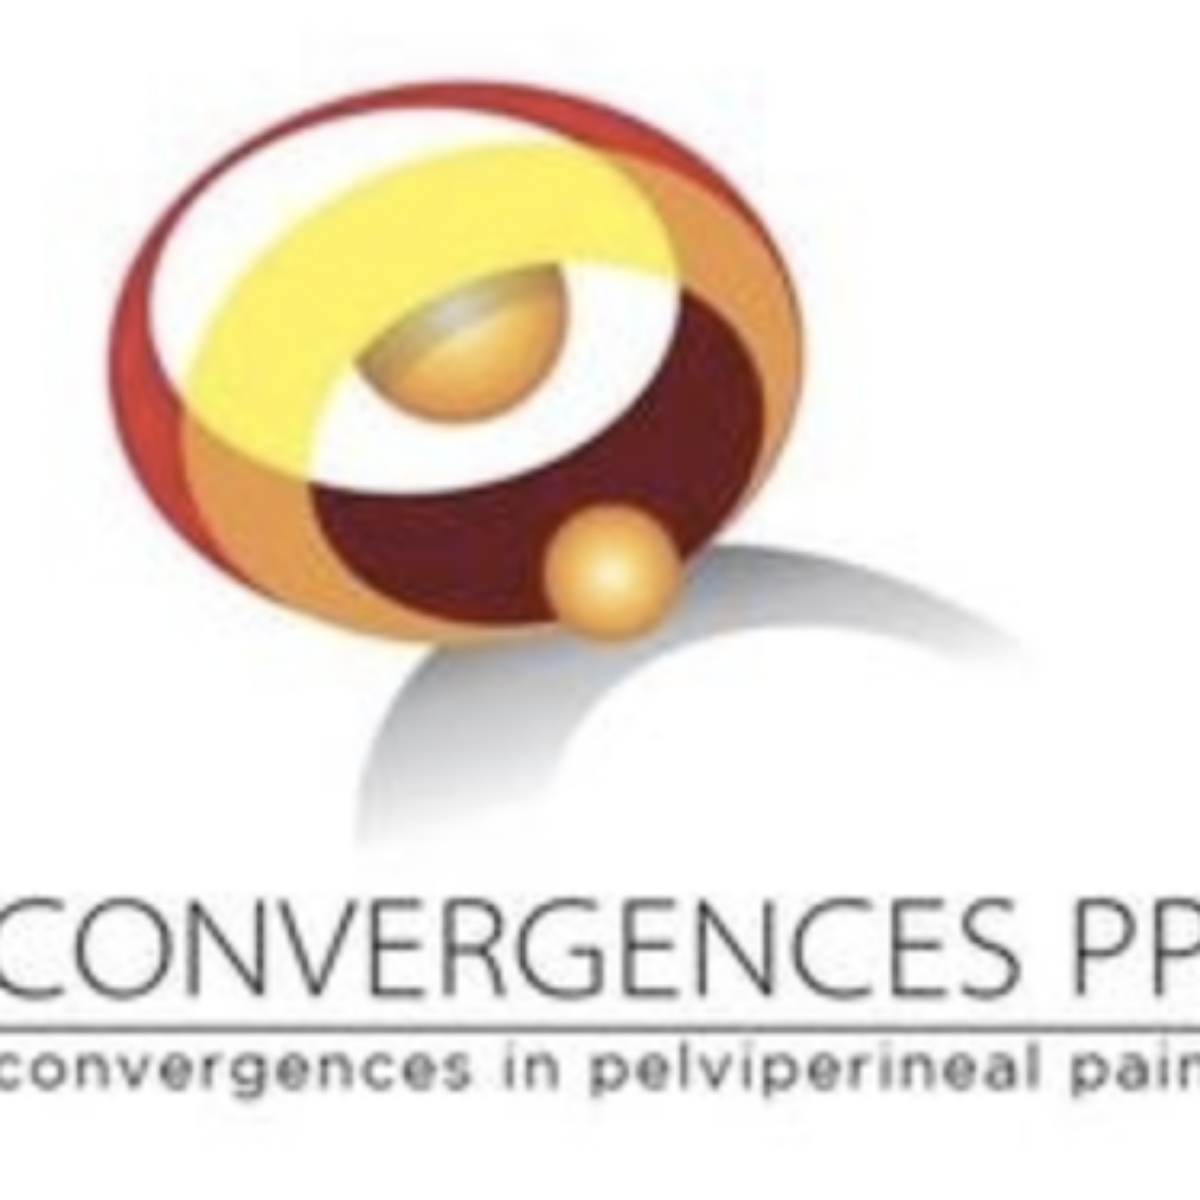 Présentation de la société savante européenne Convergences PP présidée par le Dr Eric Bautrant